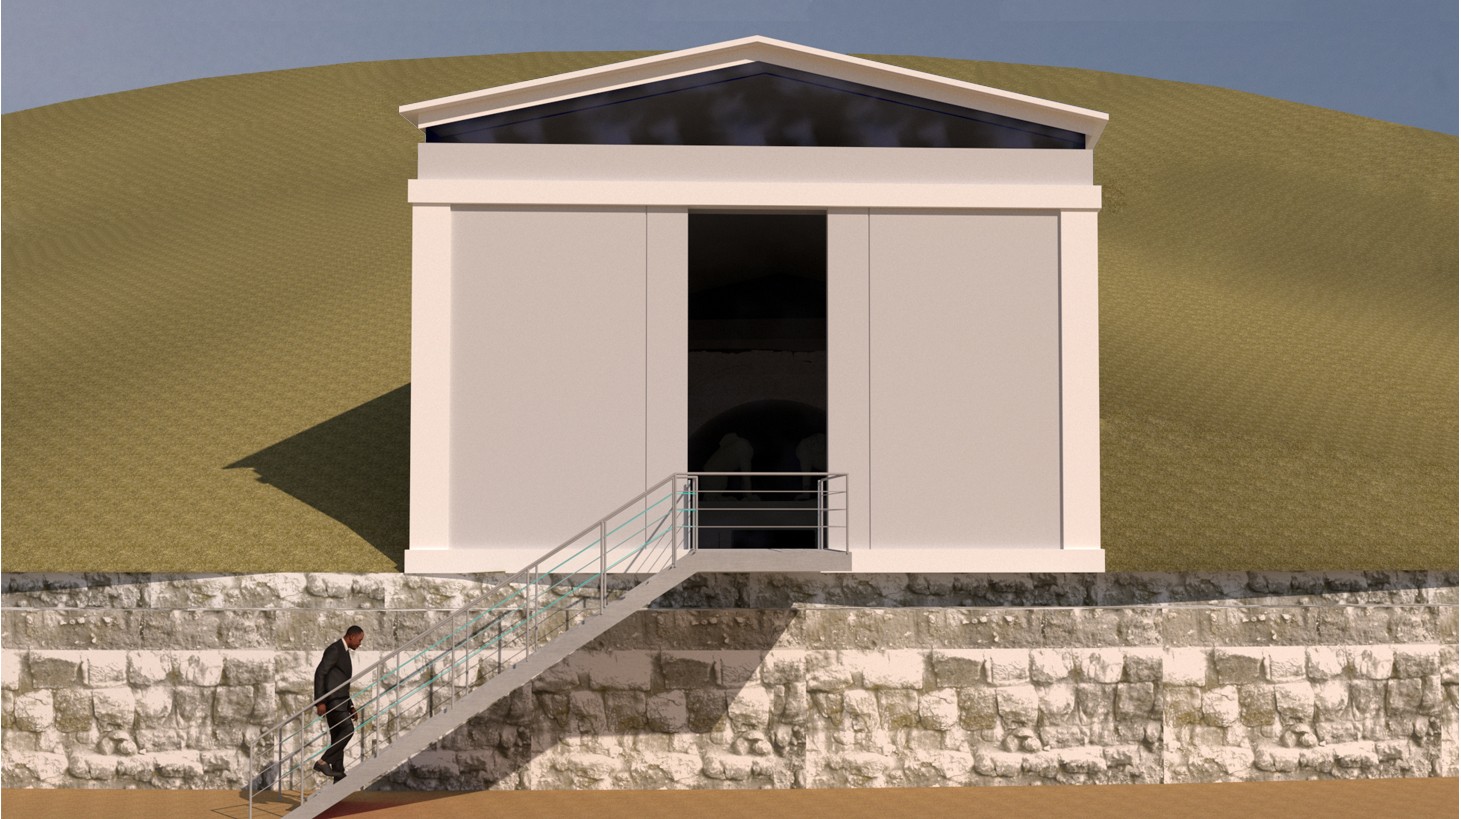 Κέλυφος προστασίας για τον τάφο της Αμφίπολης - Επισκέψιμο από το 2022